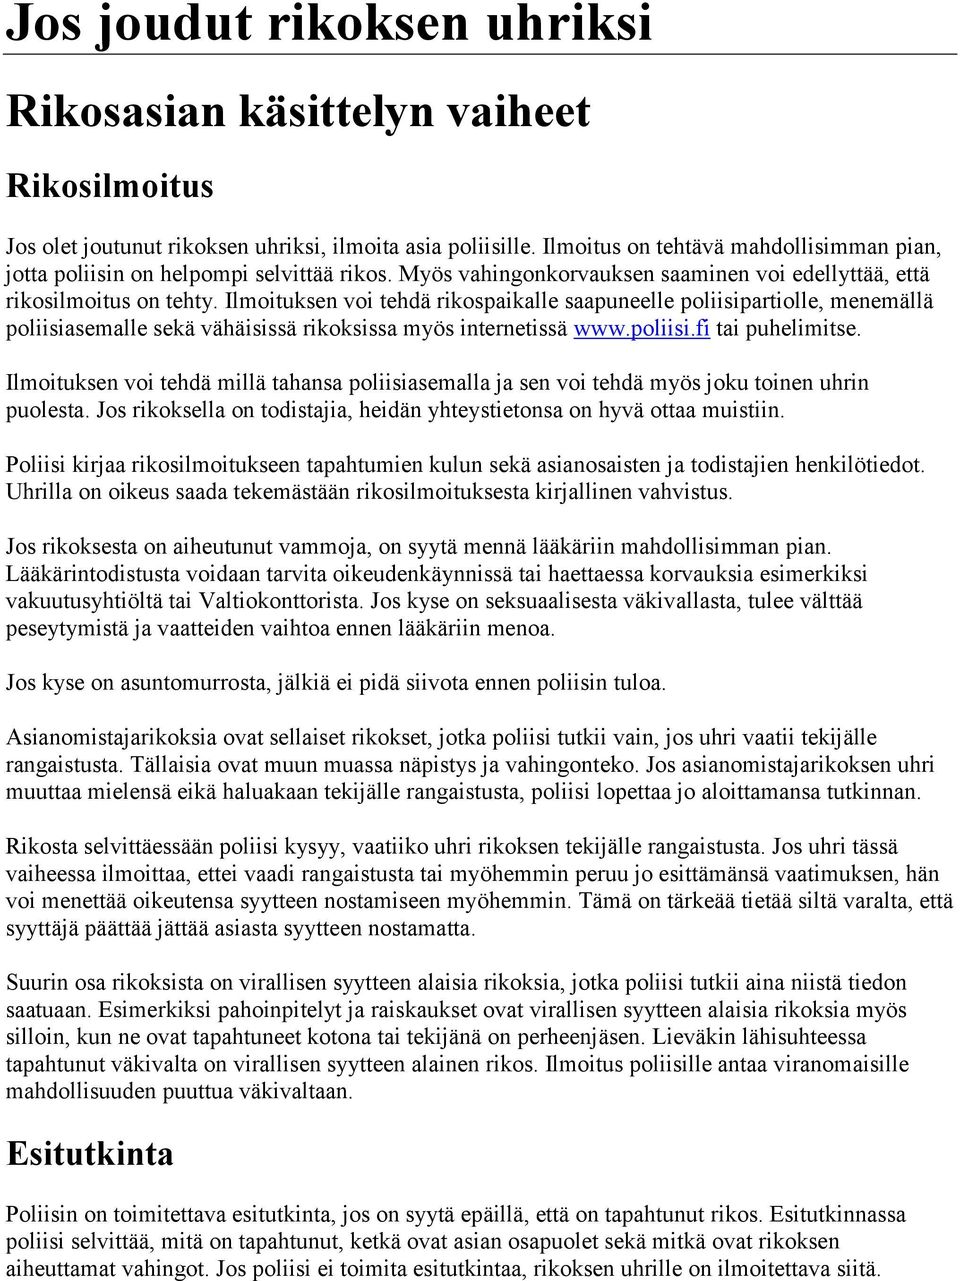 Ilmoituksen voi tehdä rikospaikalle saapuneelle poliisipartiolle, menemällä poliisiasemalle sekä vähäisissä rikoksissa myös internetissä www.poliisi.fi tai puhelimitse.